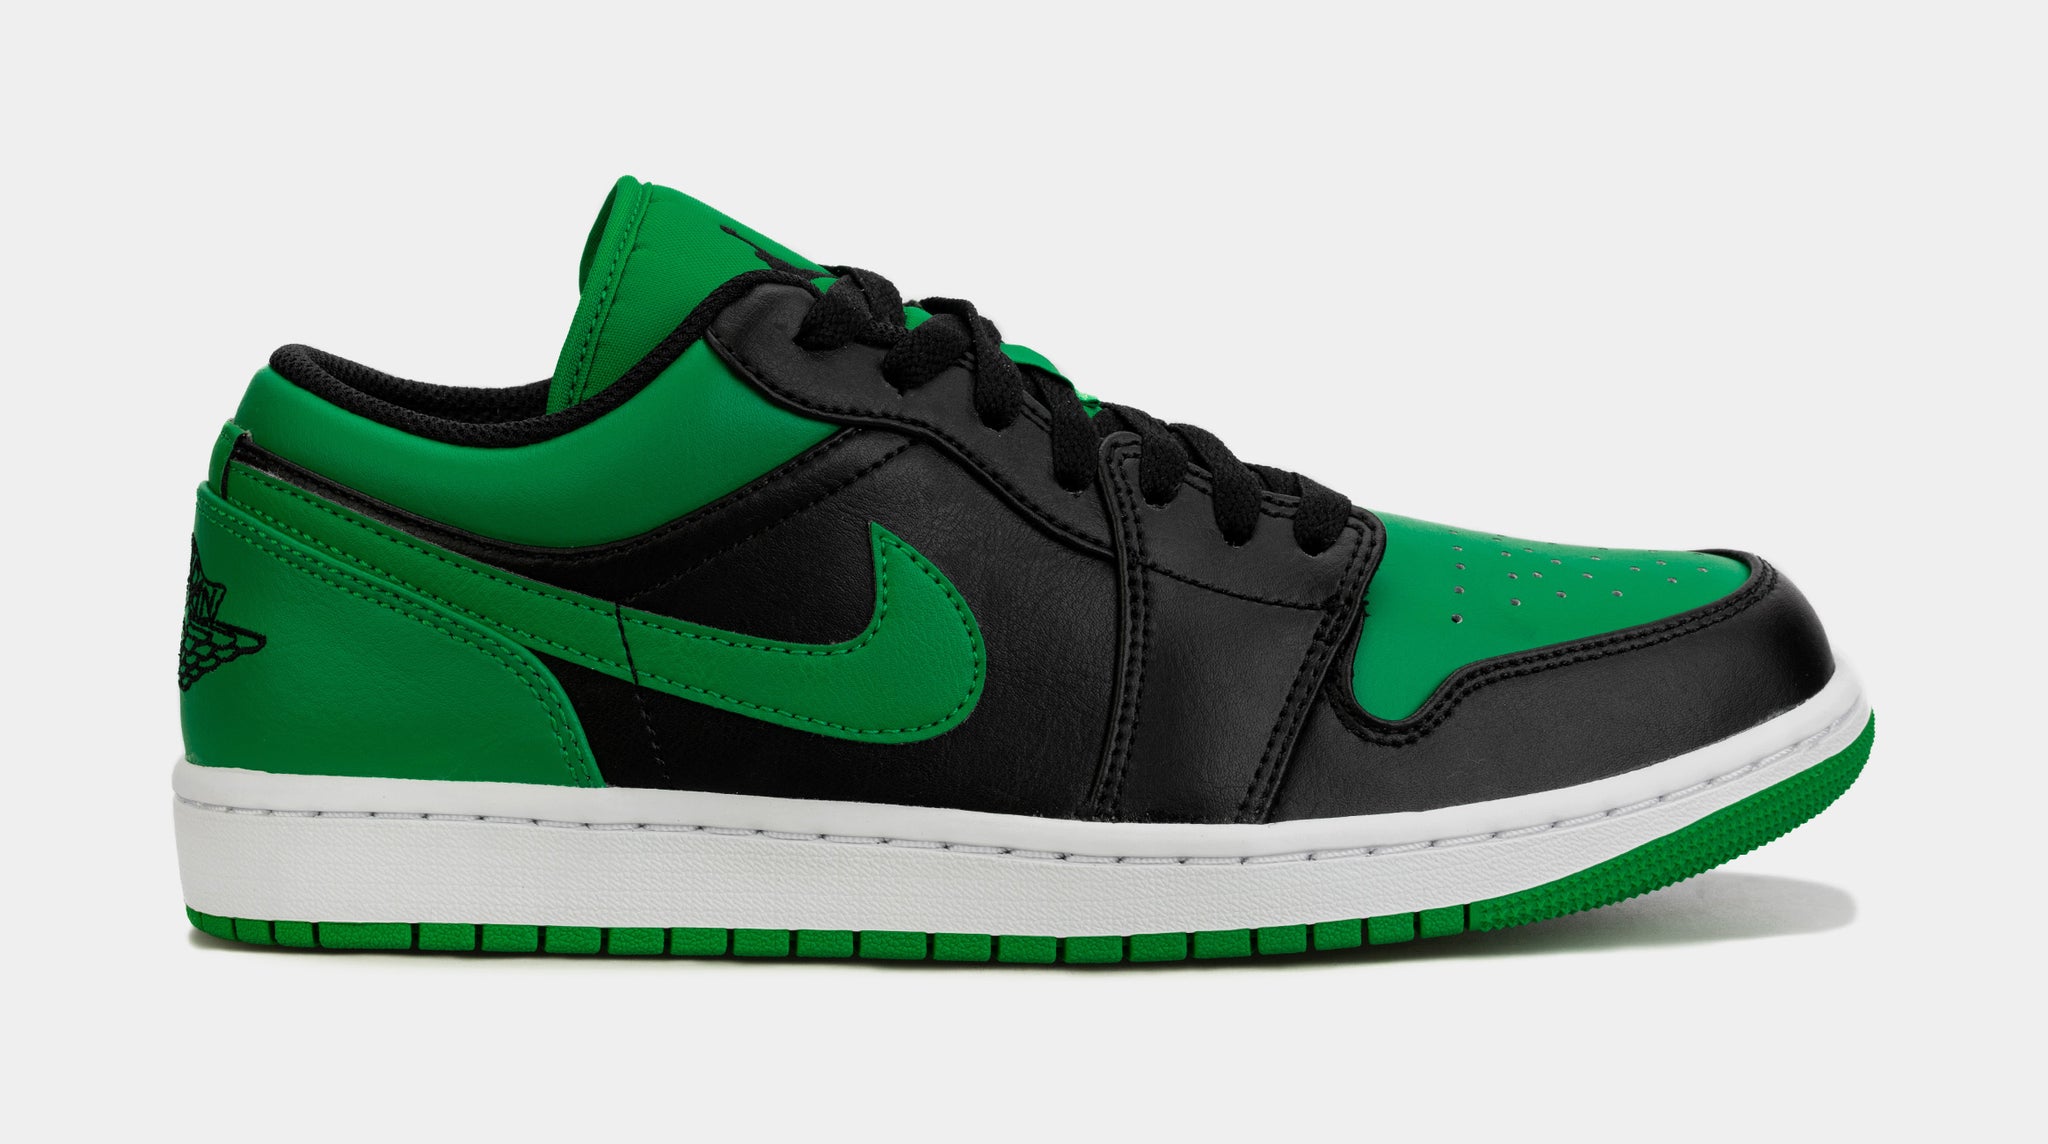 Air Jordan 1 Low: Nike's Air Jordan 1 Low Pine Green shoes